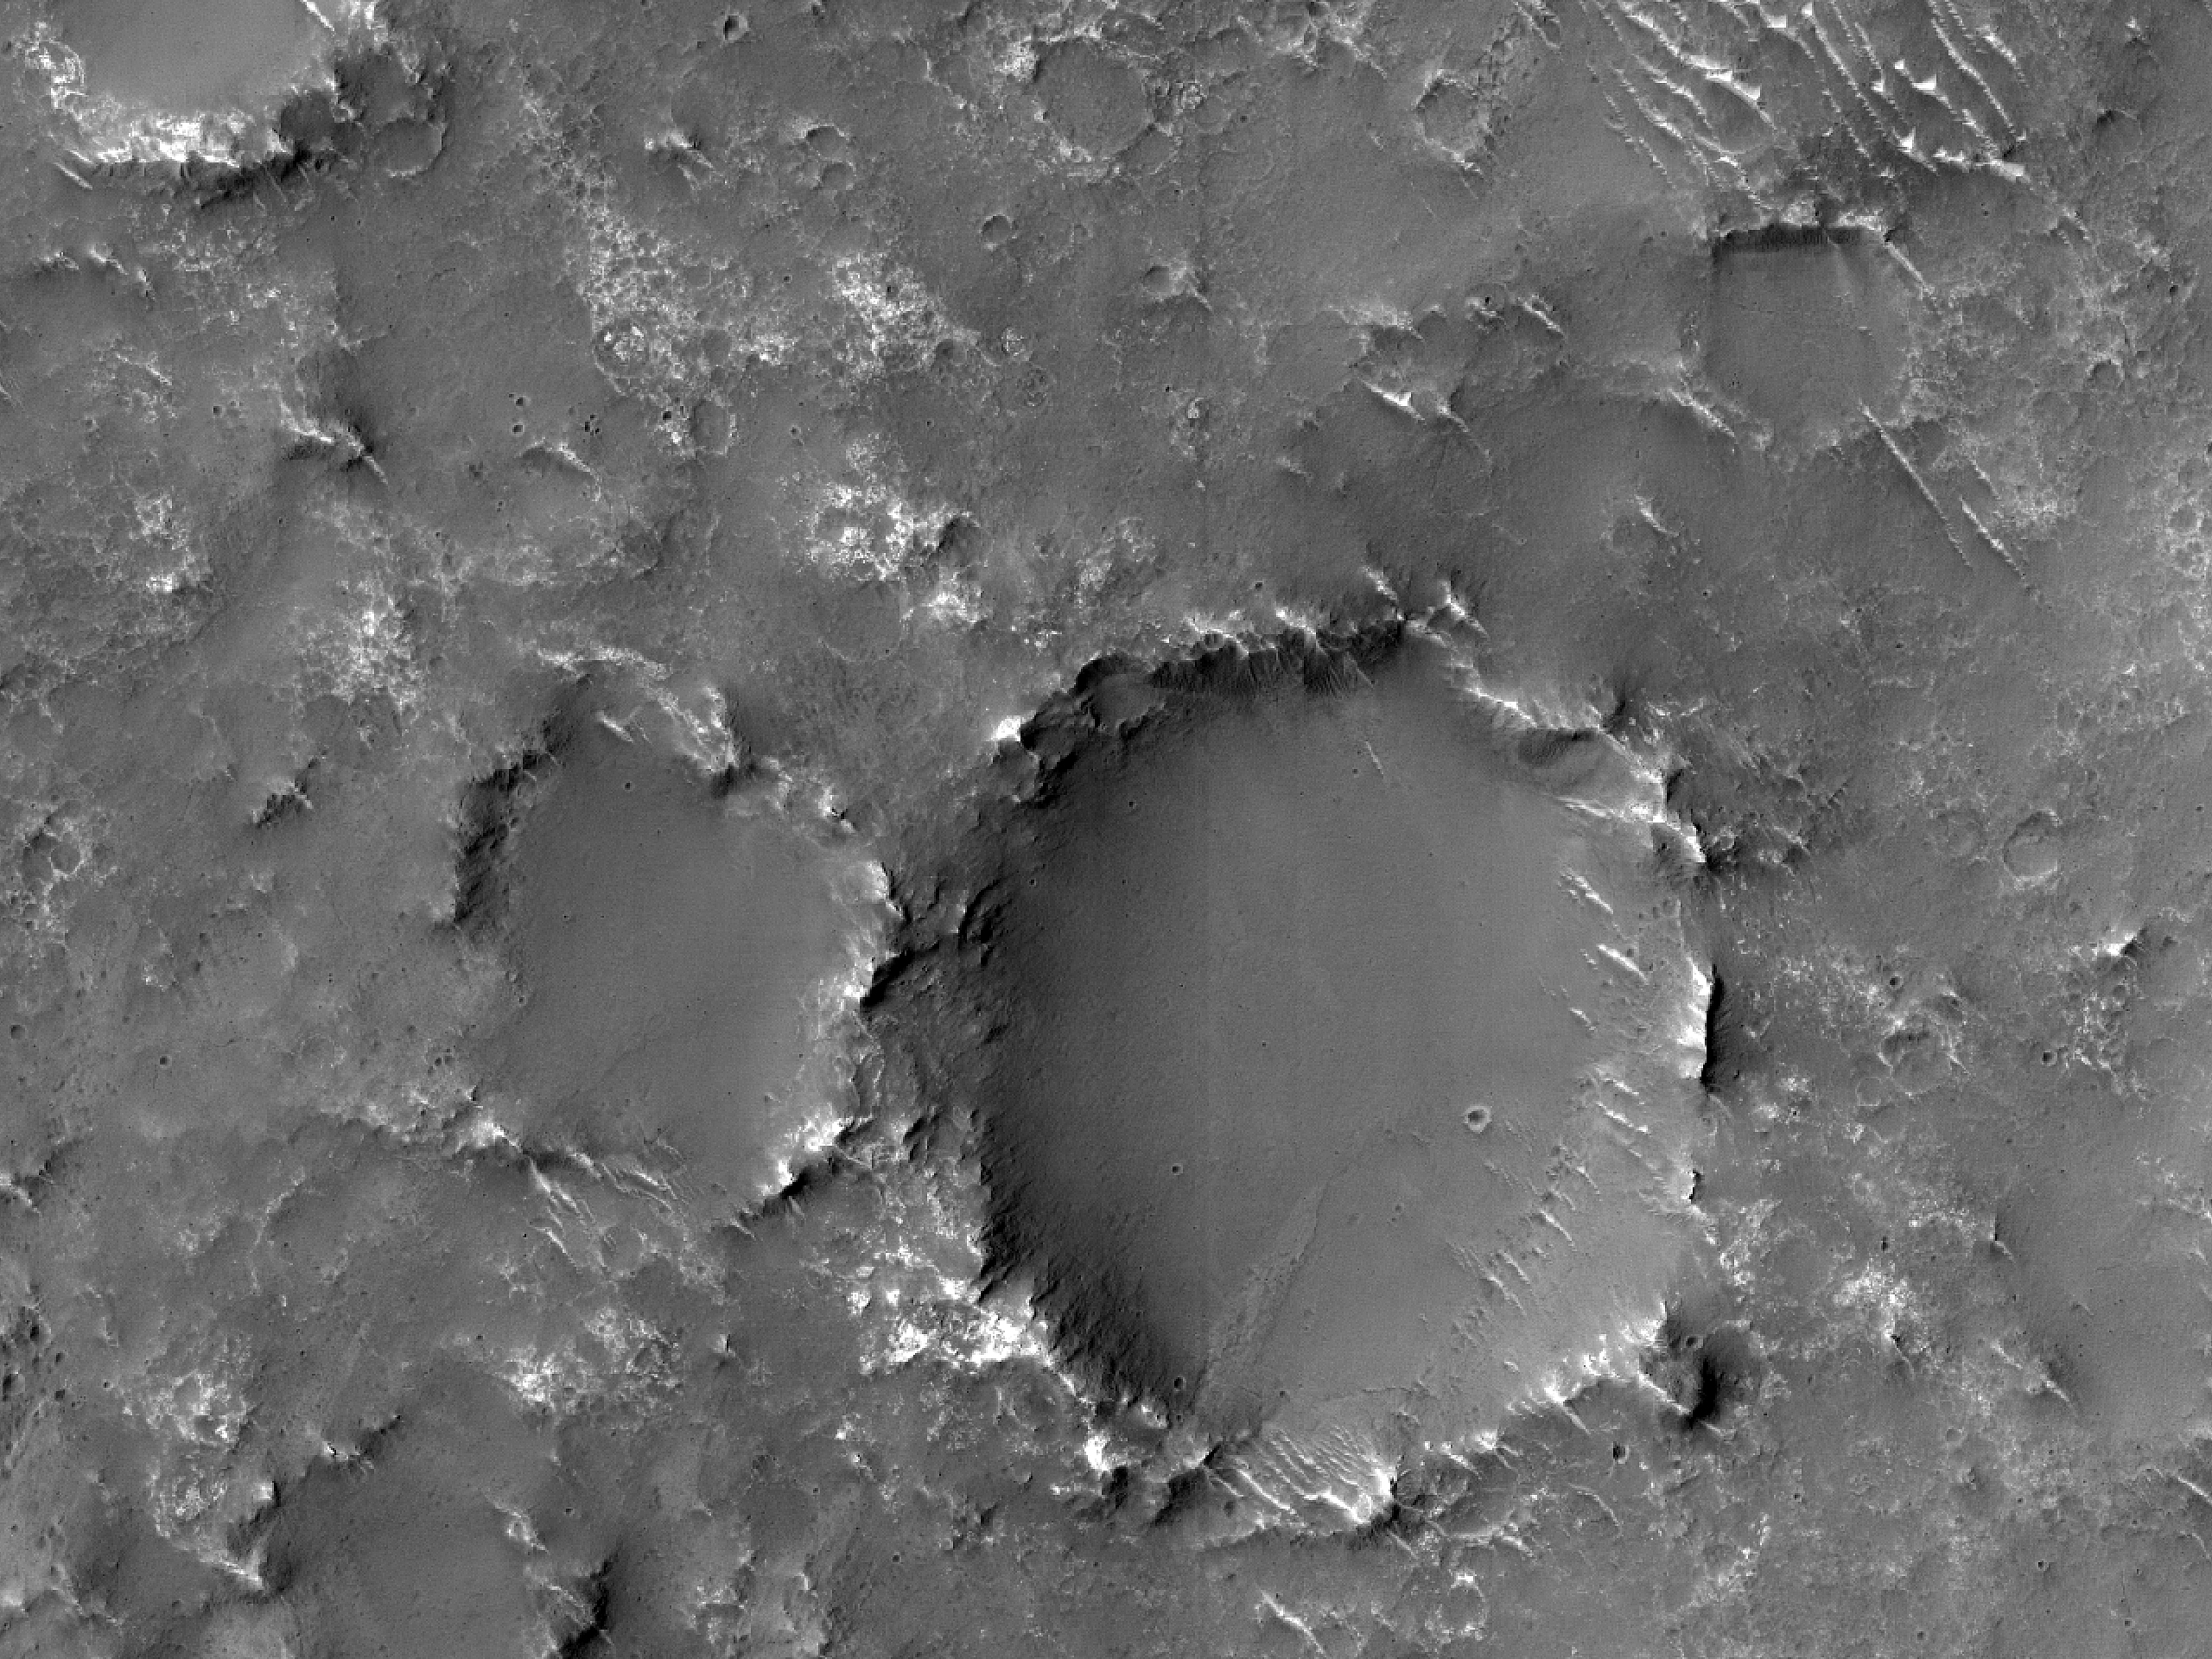 Mniejszy niż 1 kilometr w przekroju świeży krater uderzeniowy